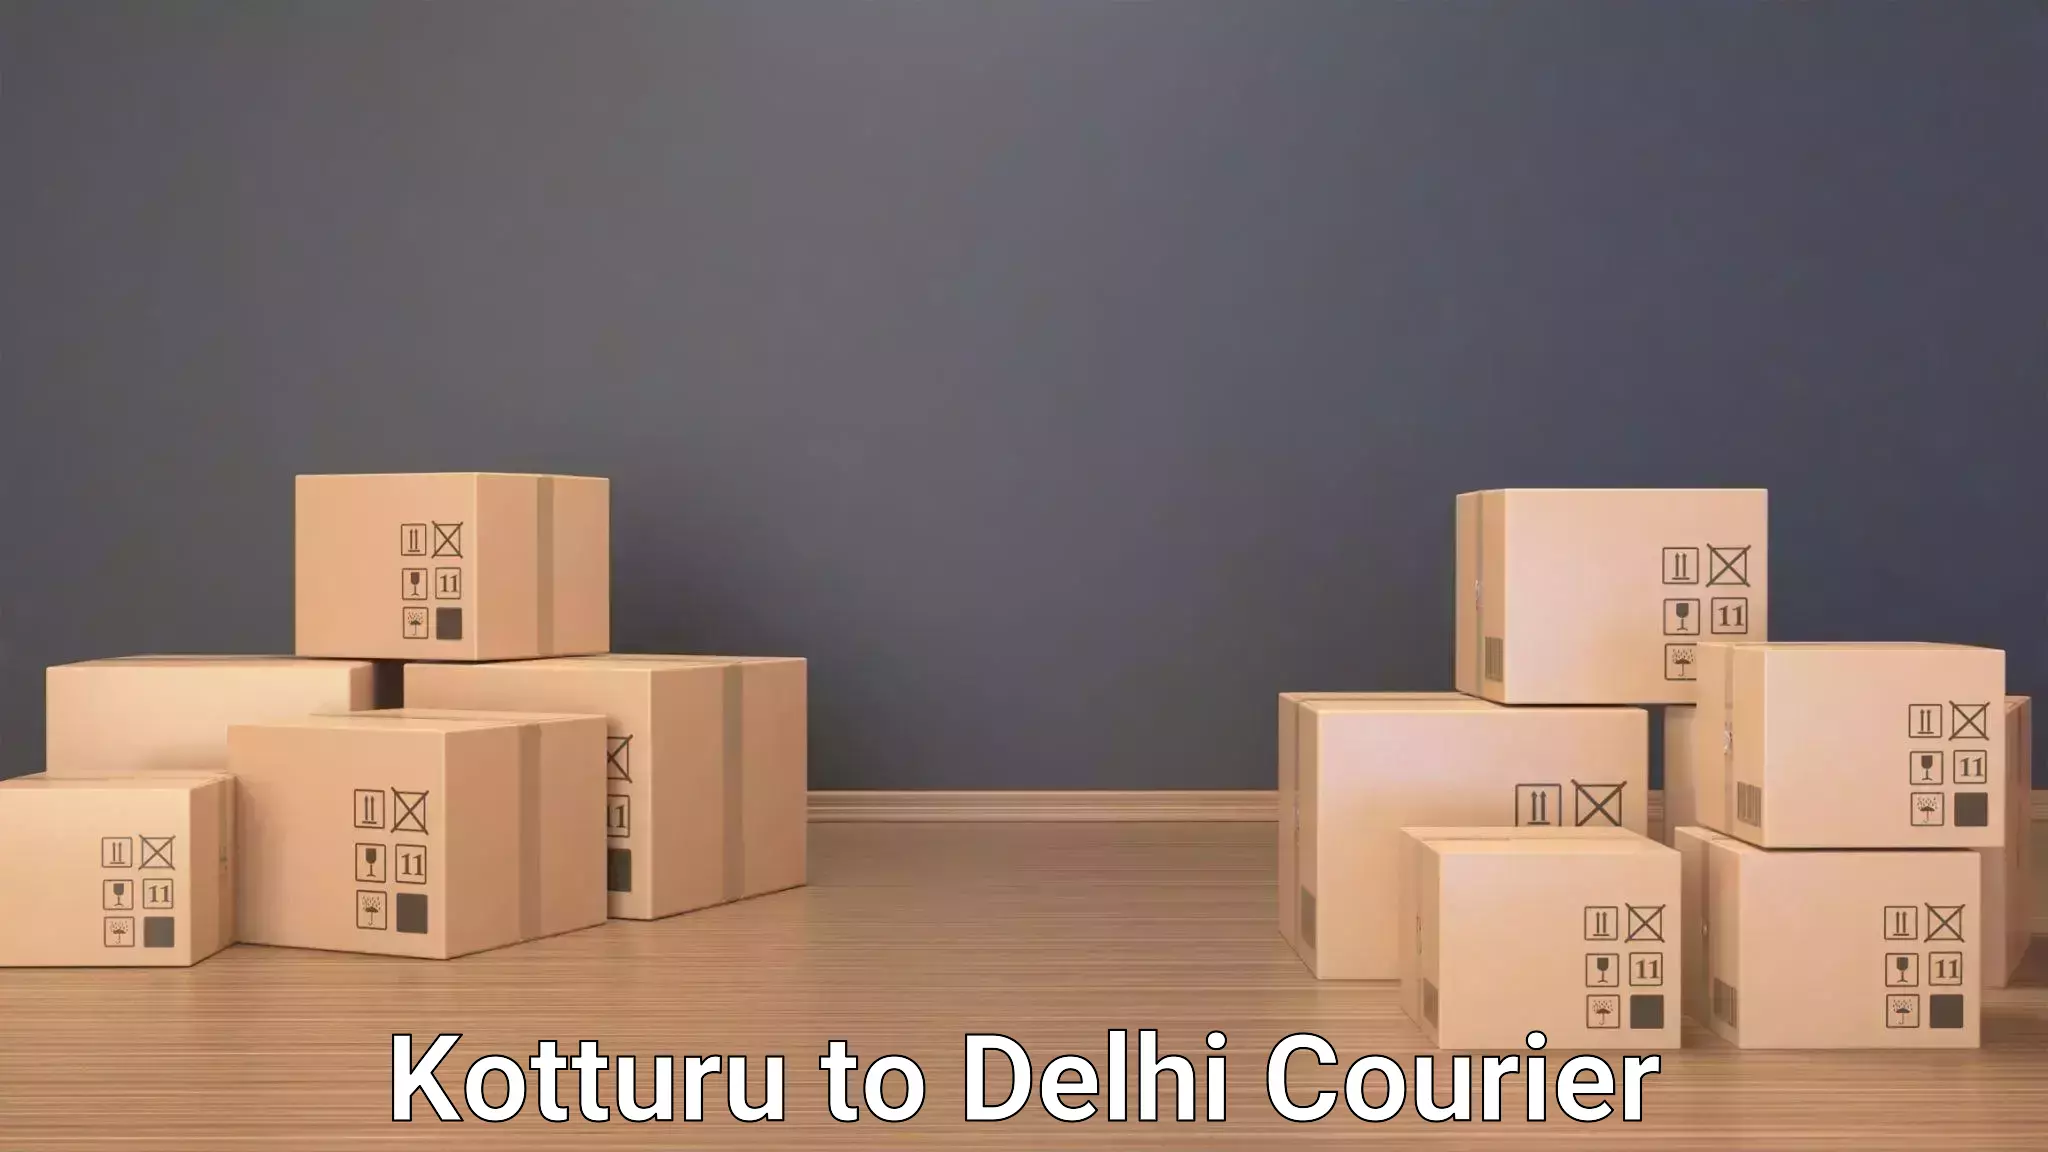 Luggage dispatch service Kotturu to Delhi